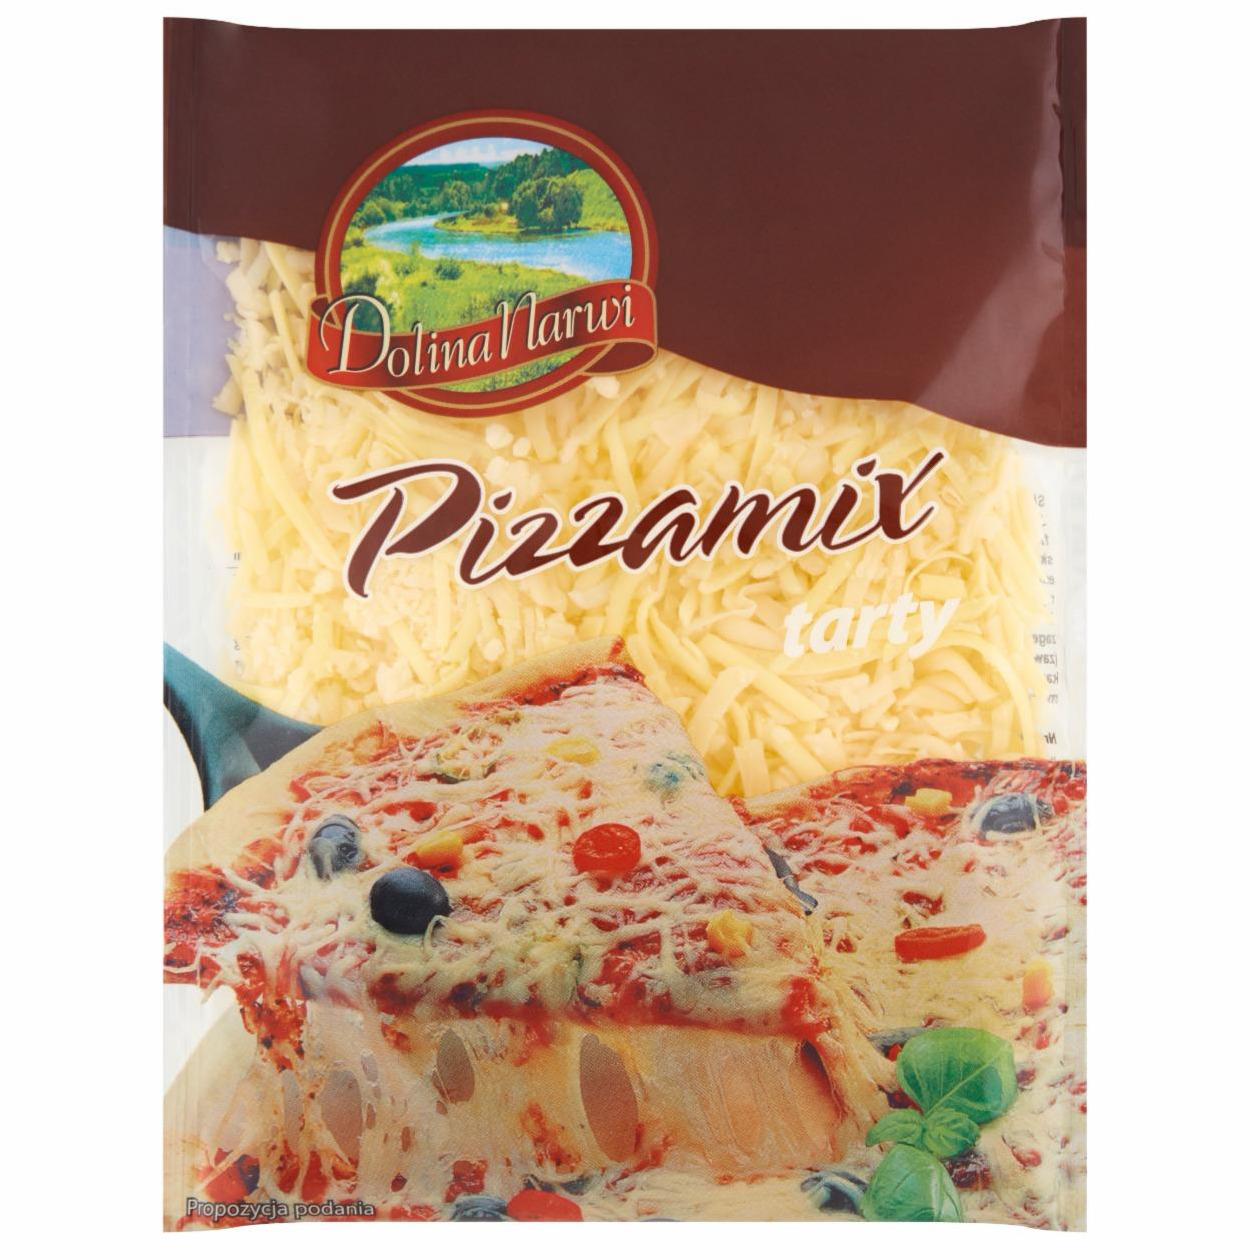 Zdjęcia - Pizzamix Produkt seropodobny tarty Dolina Narwi